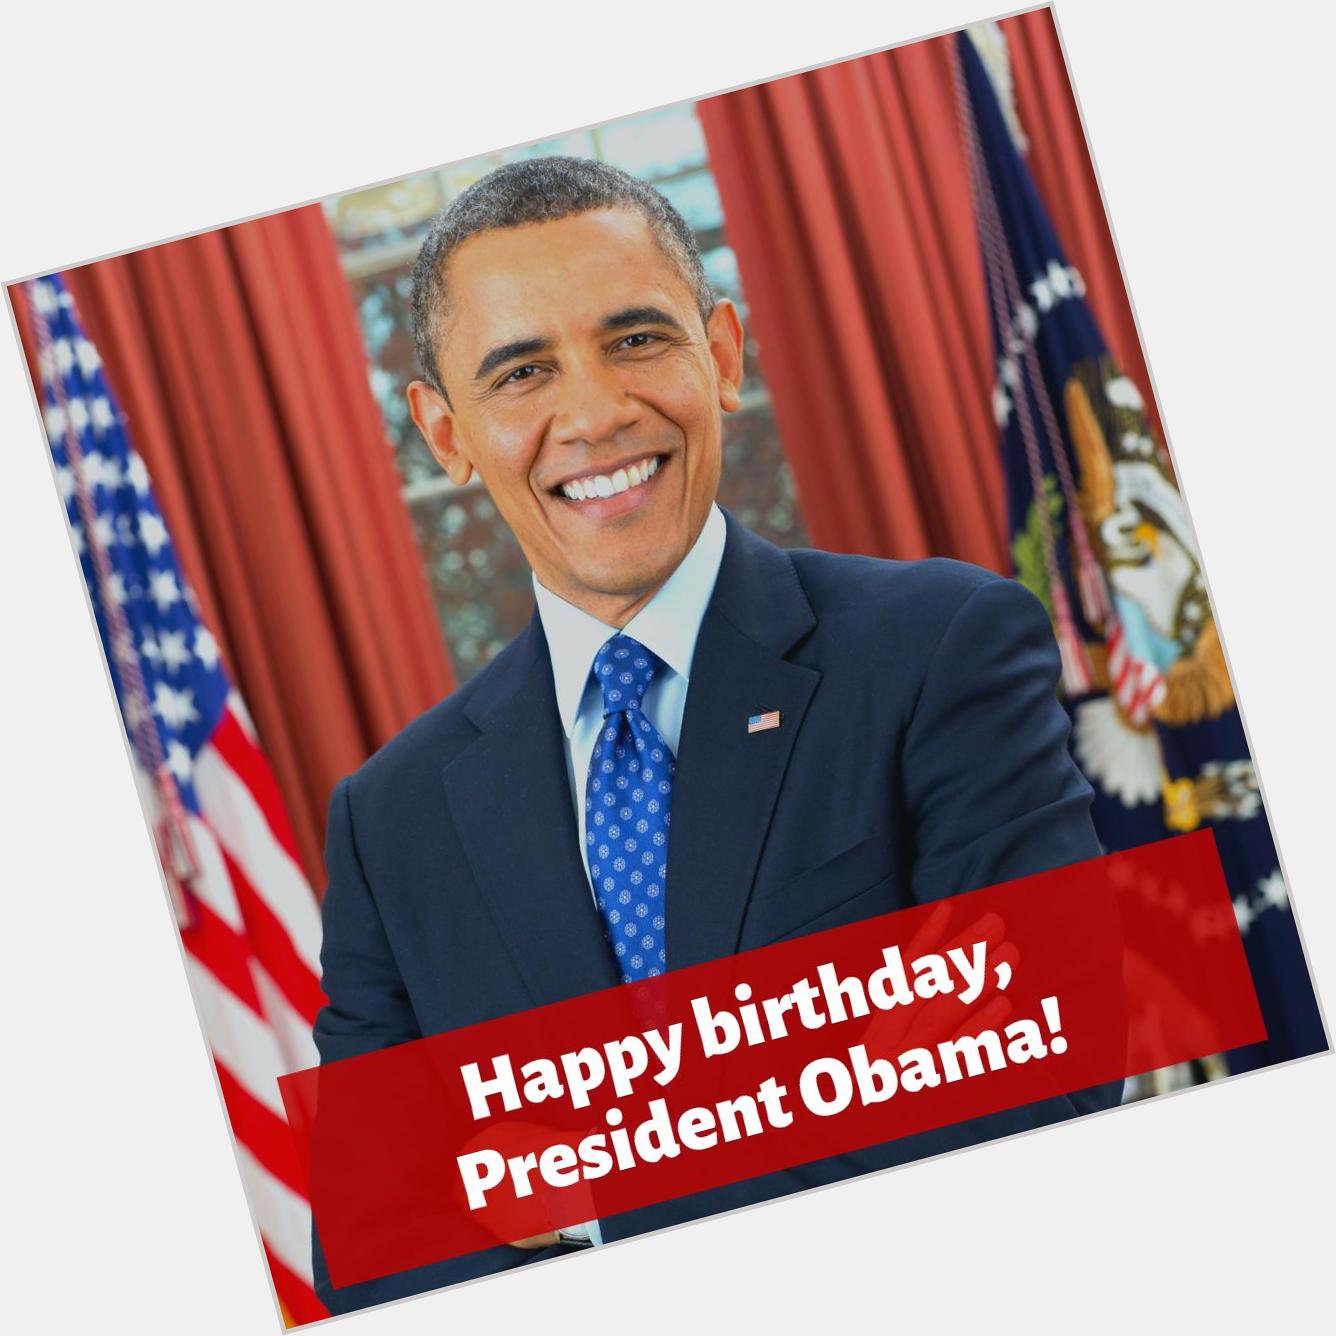 Happy birthday to Barack Obama today! 